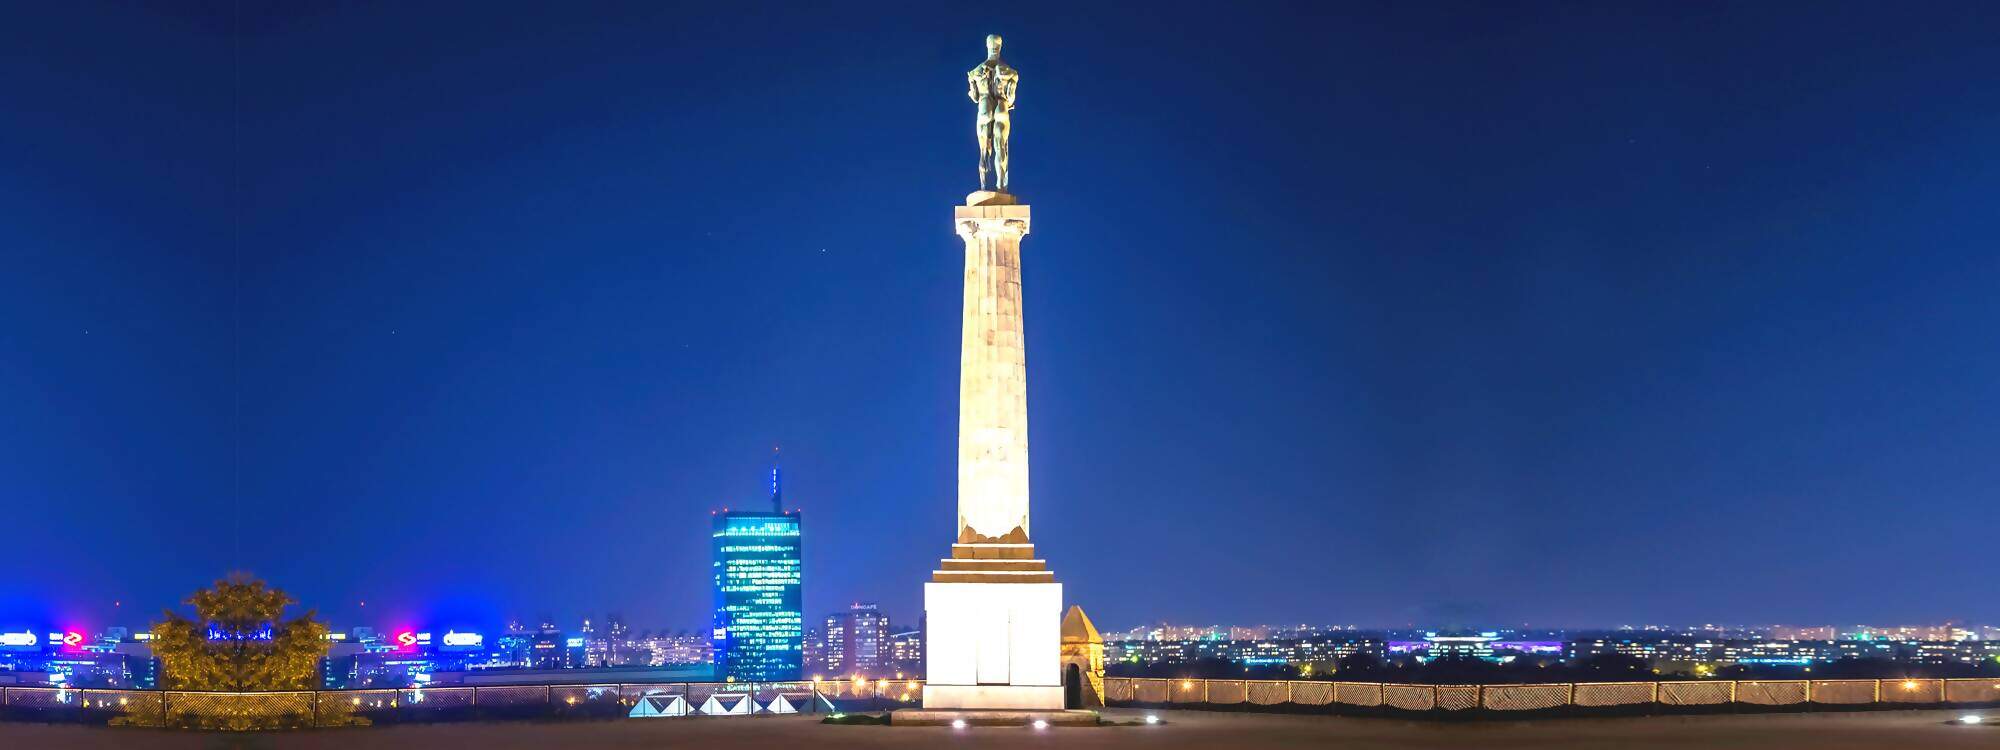 Das Friedensmonument und das Belgrader Stadtbild in Serbien